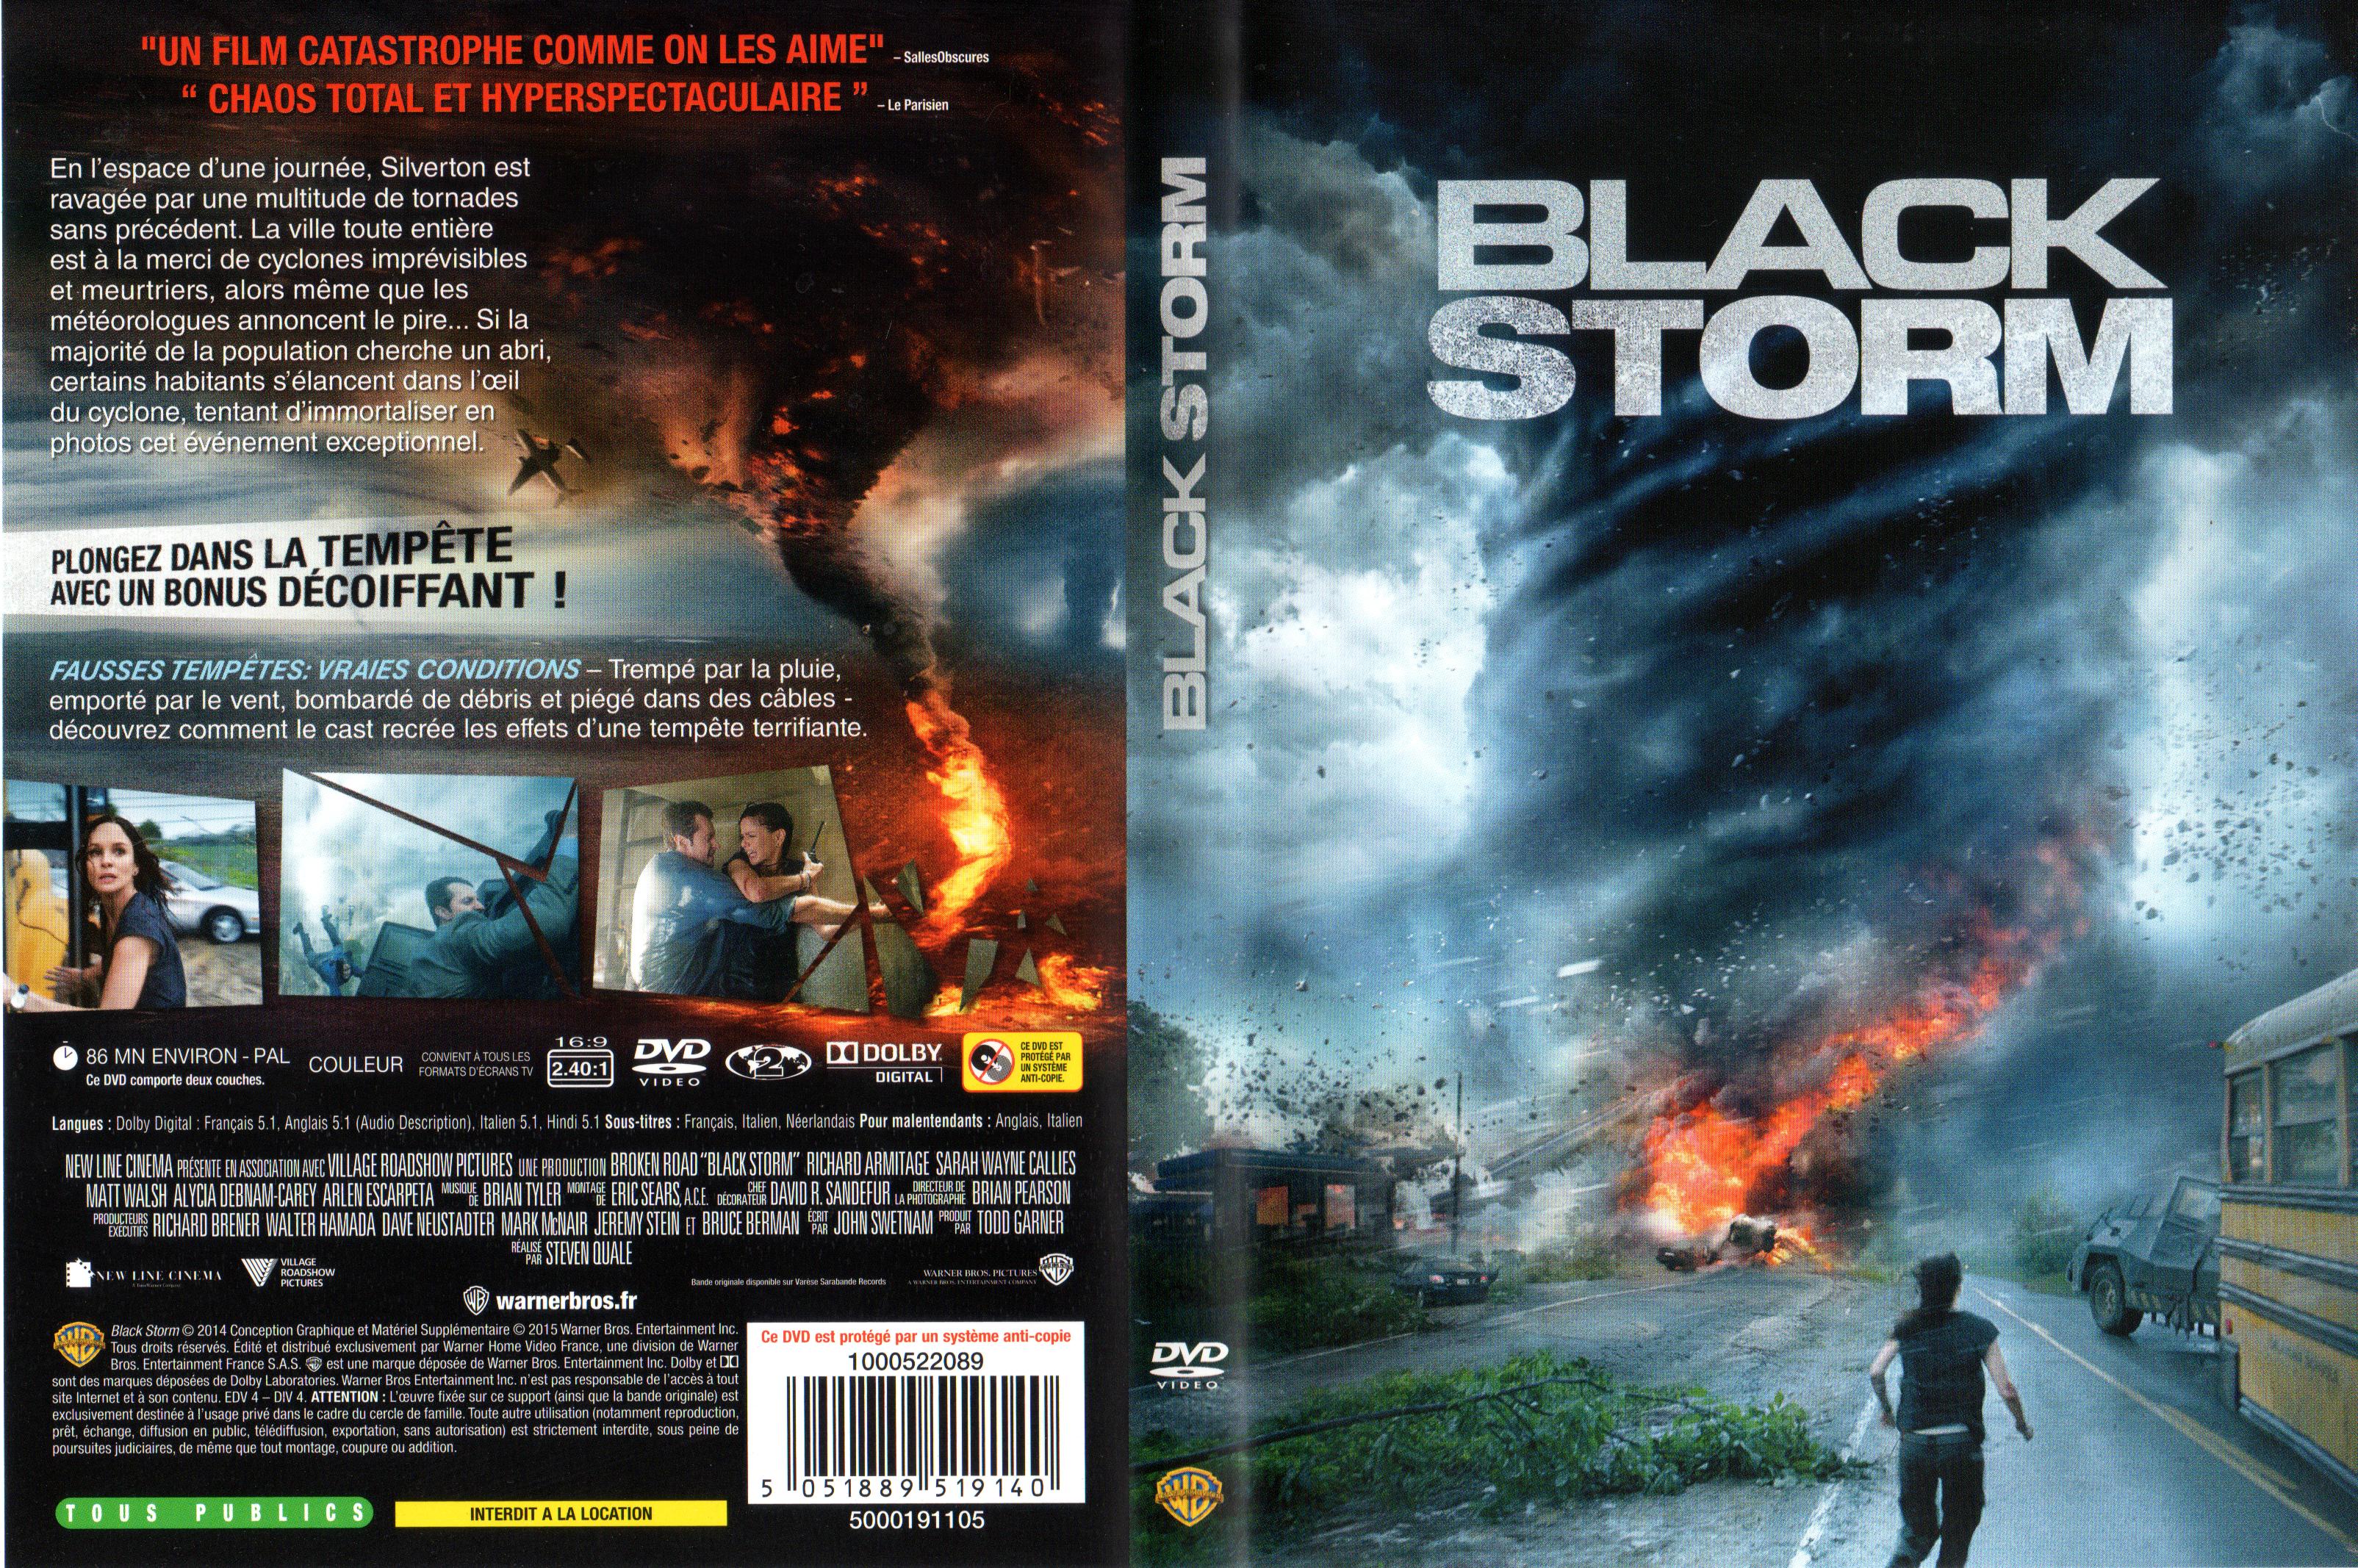 Jaquette DVD Black Storm V2